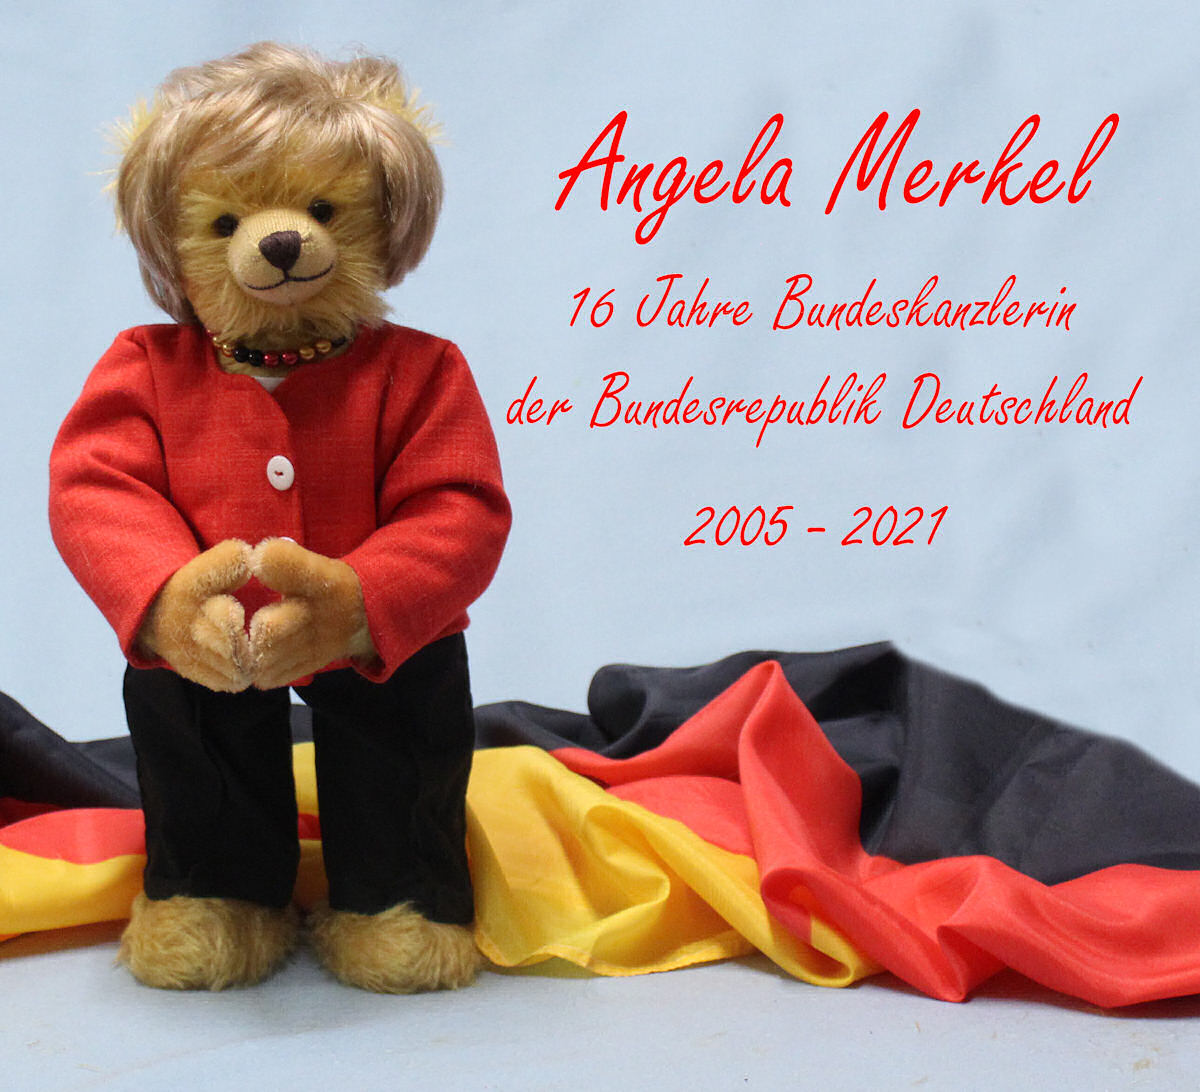 На прощание. К отставке канцлера в Германии выпустили плюшевого медведя "Меркель": фото